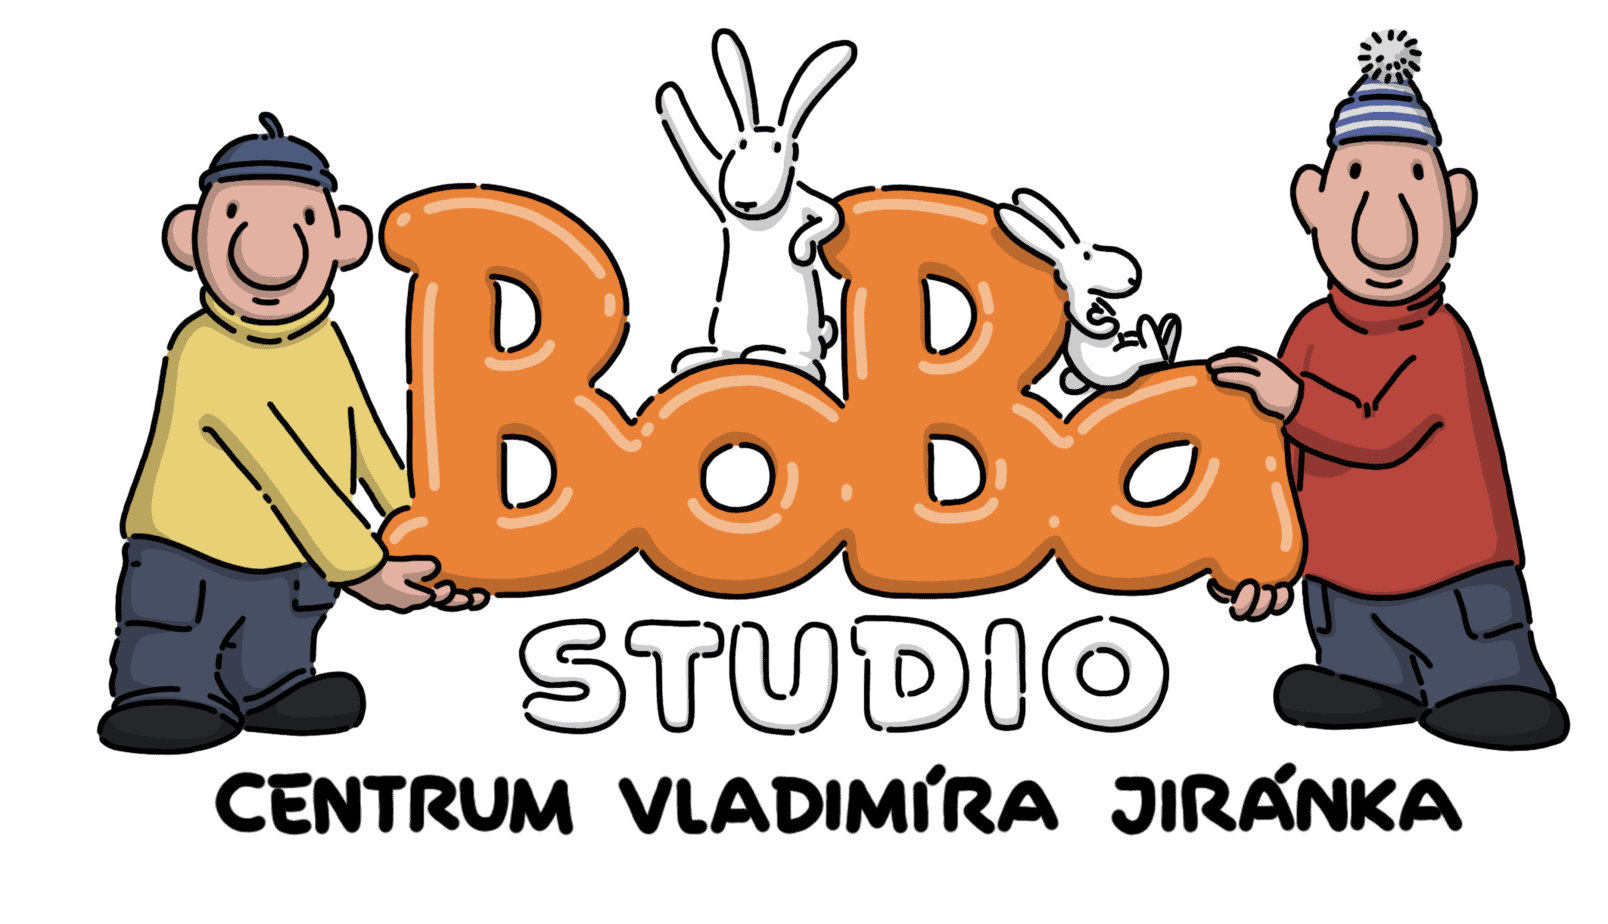 Boba studio vlastní licenci Pat a Mat a Bob a Bobek